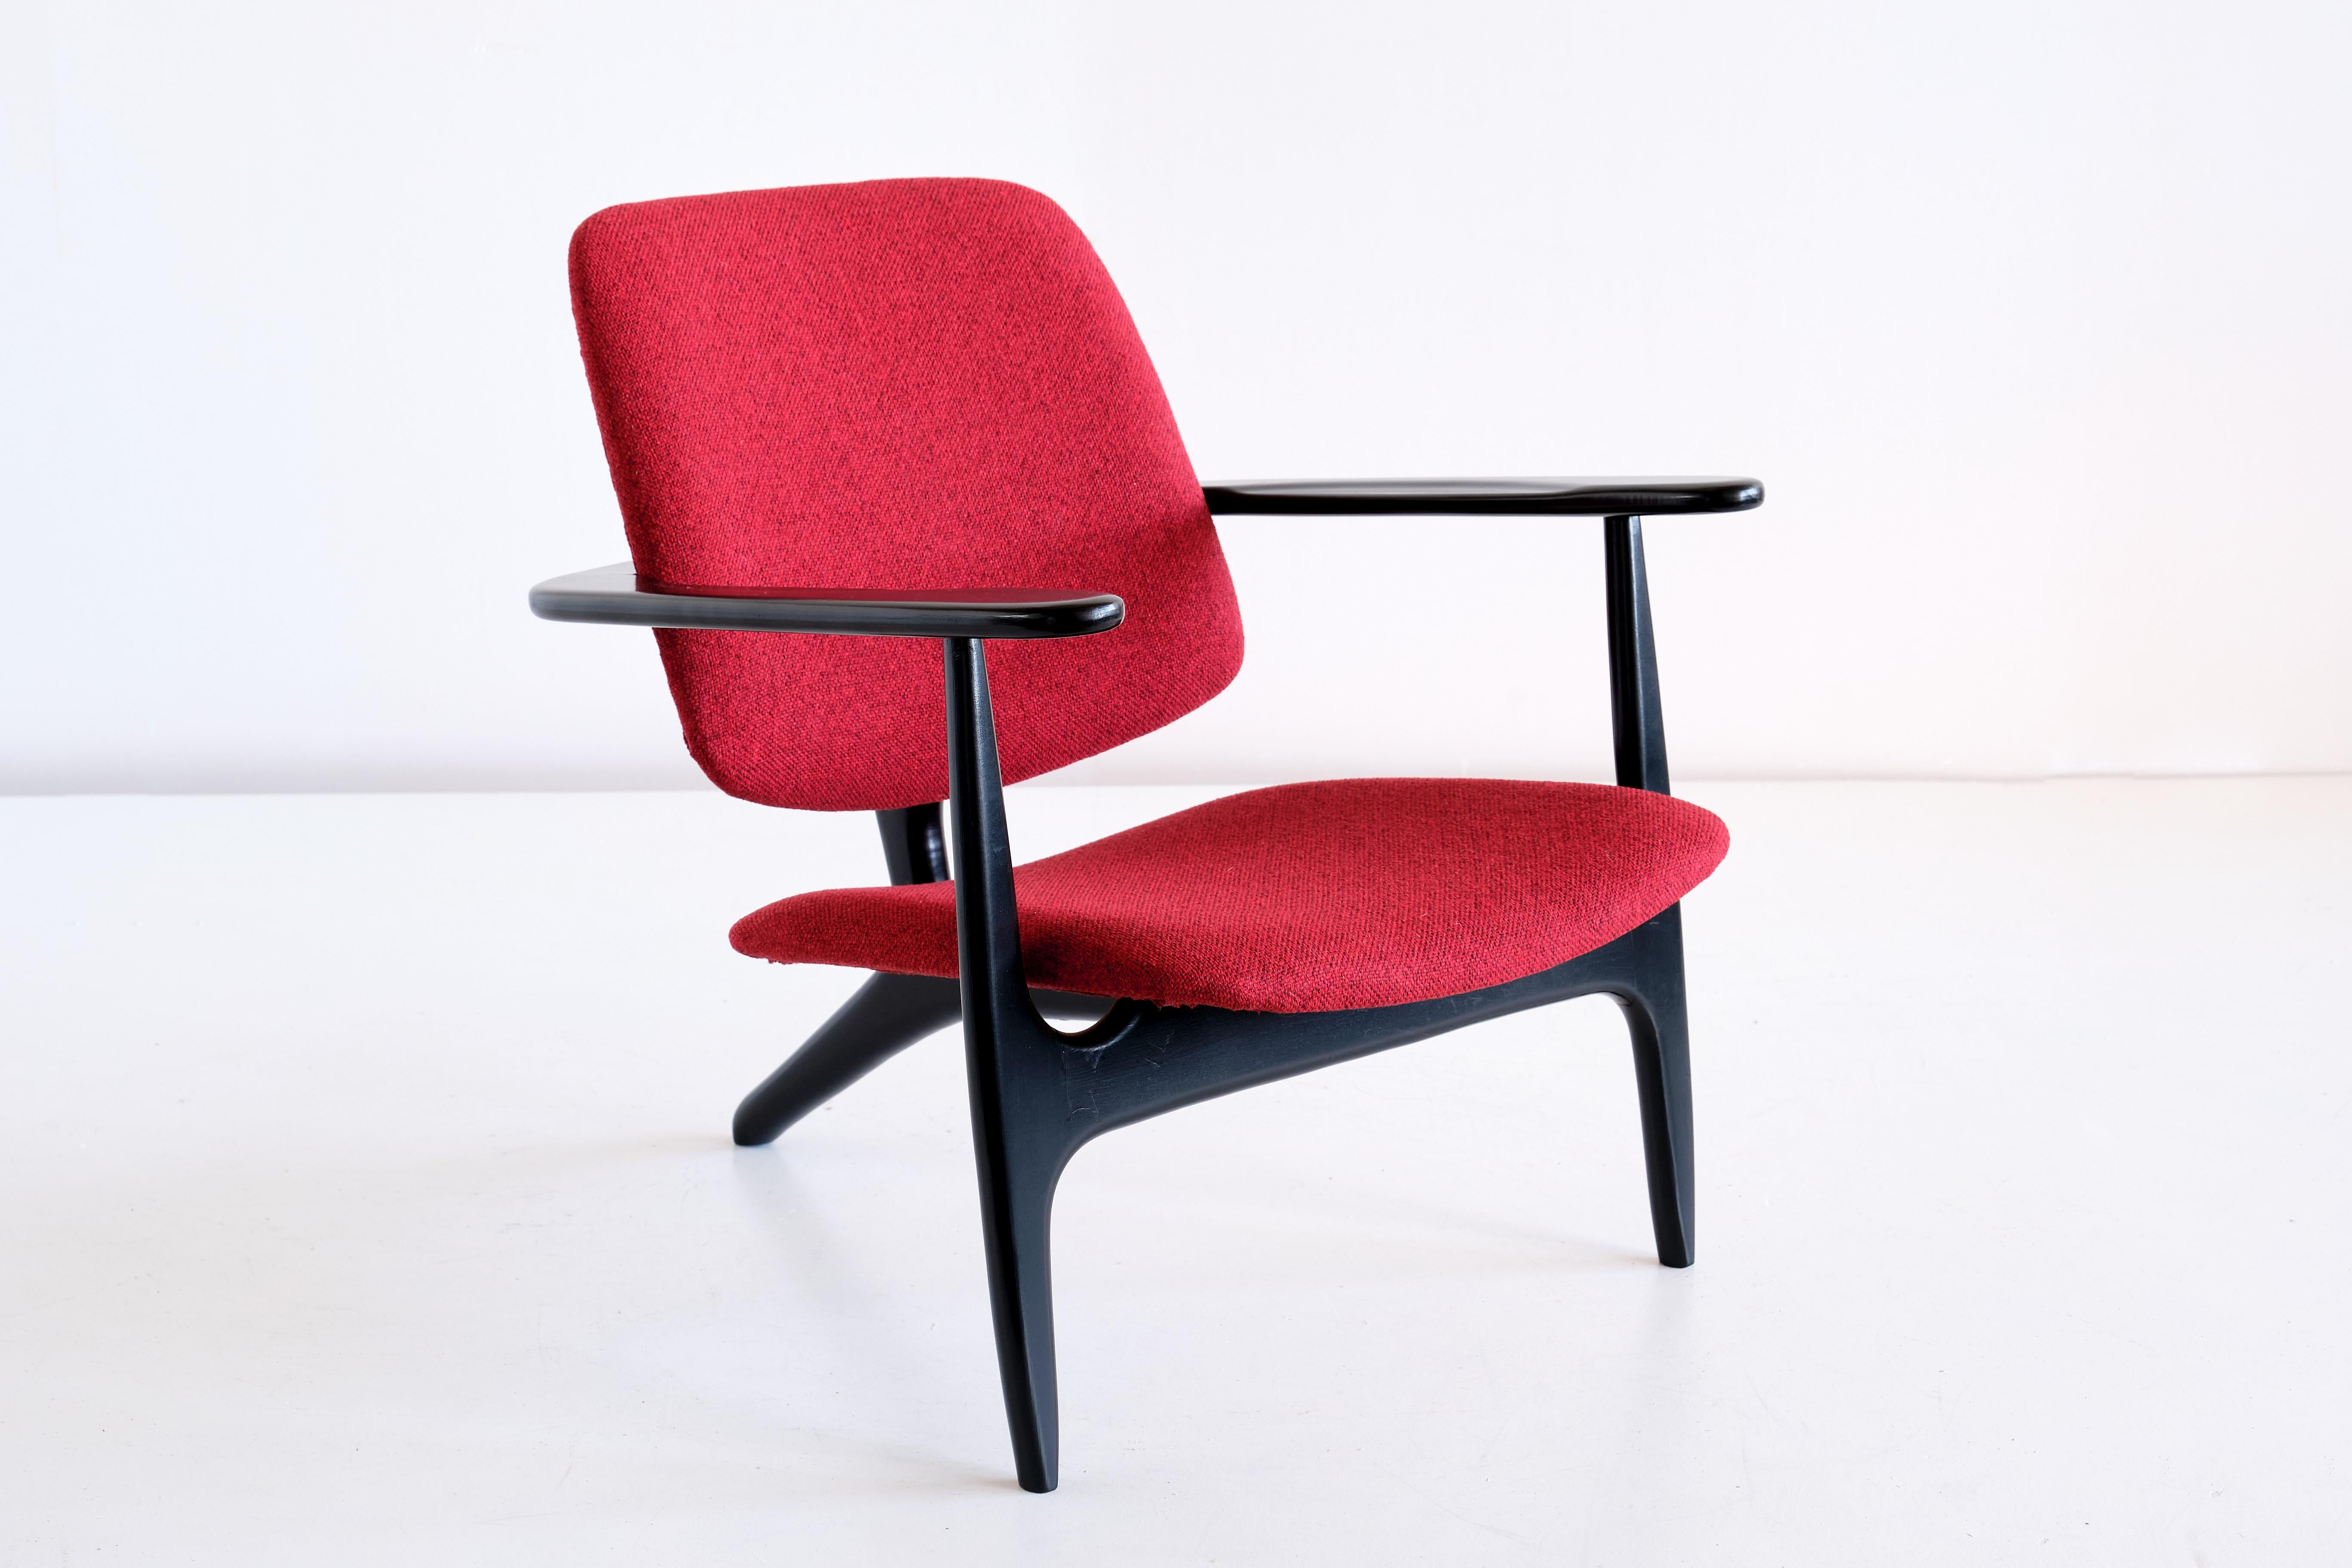 Der S3-Stuhl wurde von Alfred Hendrickx entworfen und 1958 von Belform in Belgien hergestellt. Dieser seltene Stuhl ist eine Sonderanfertigung von Hendrickx für die First Class Lounge der Sabena Airlines im Flughafen Zaventem in Brüssel. Das